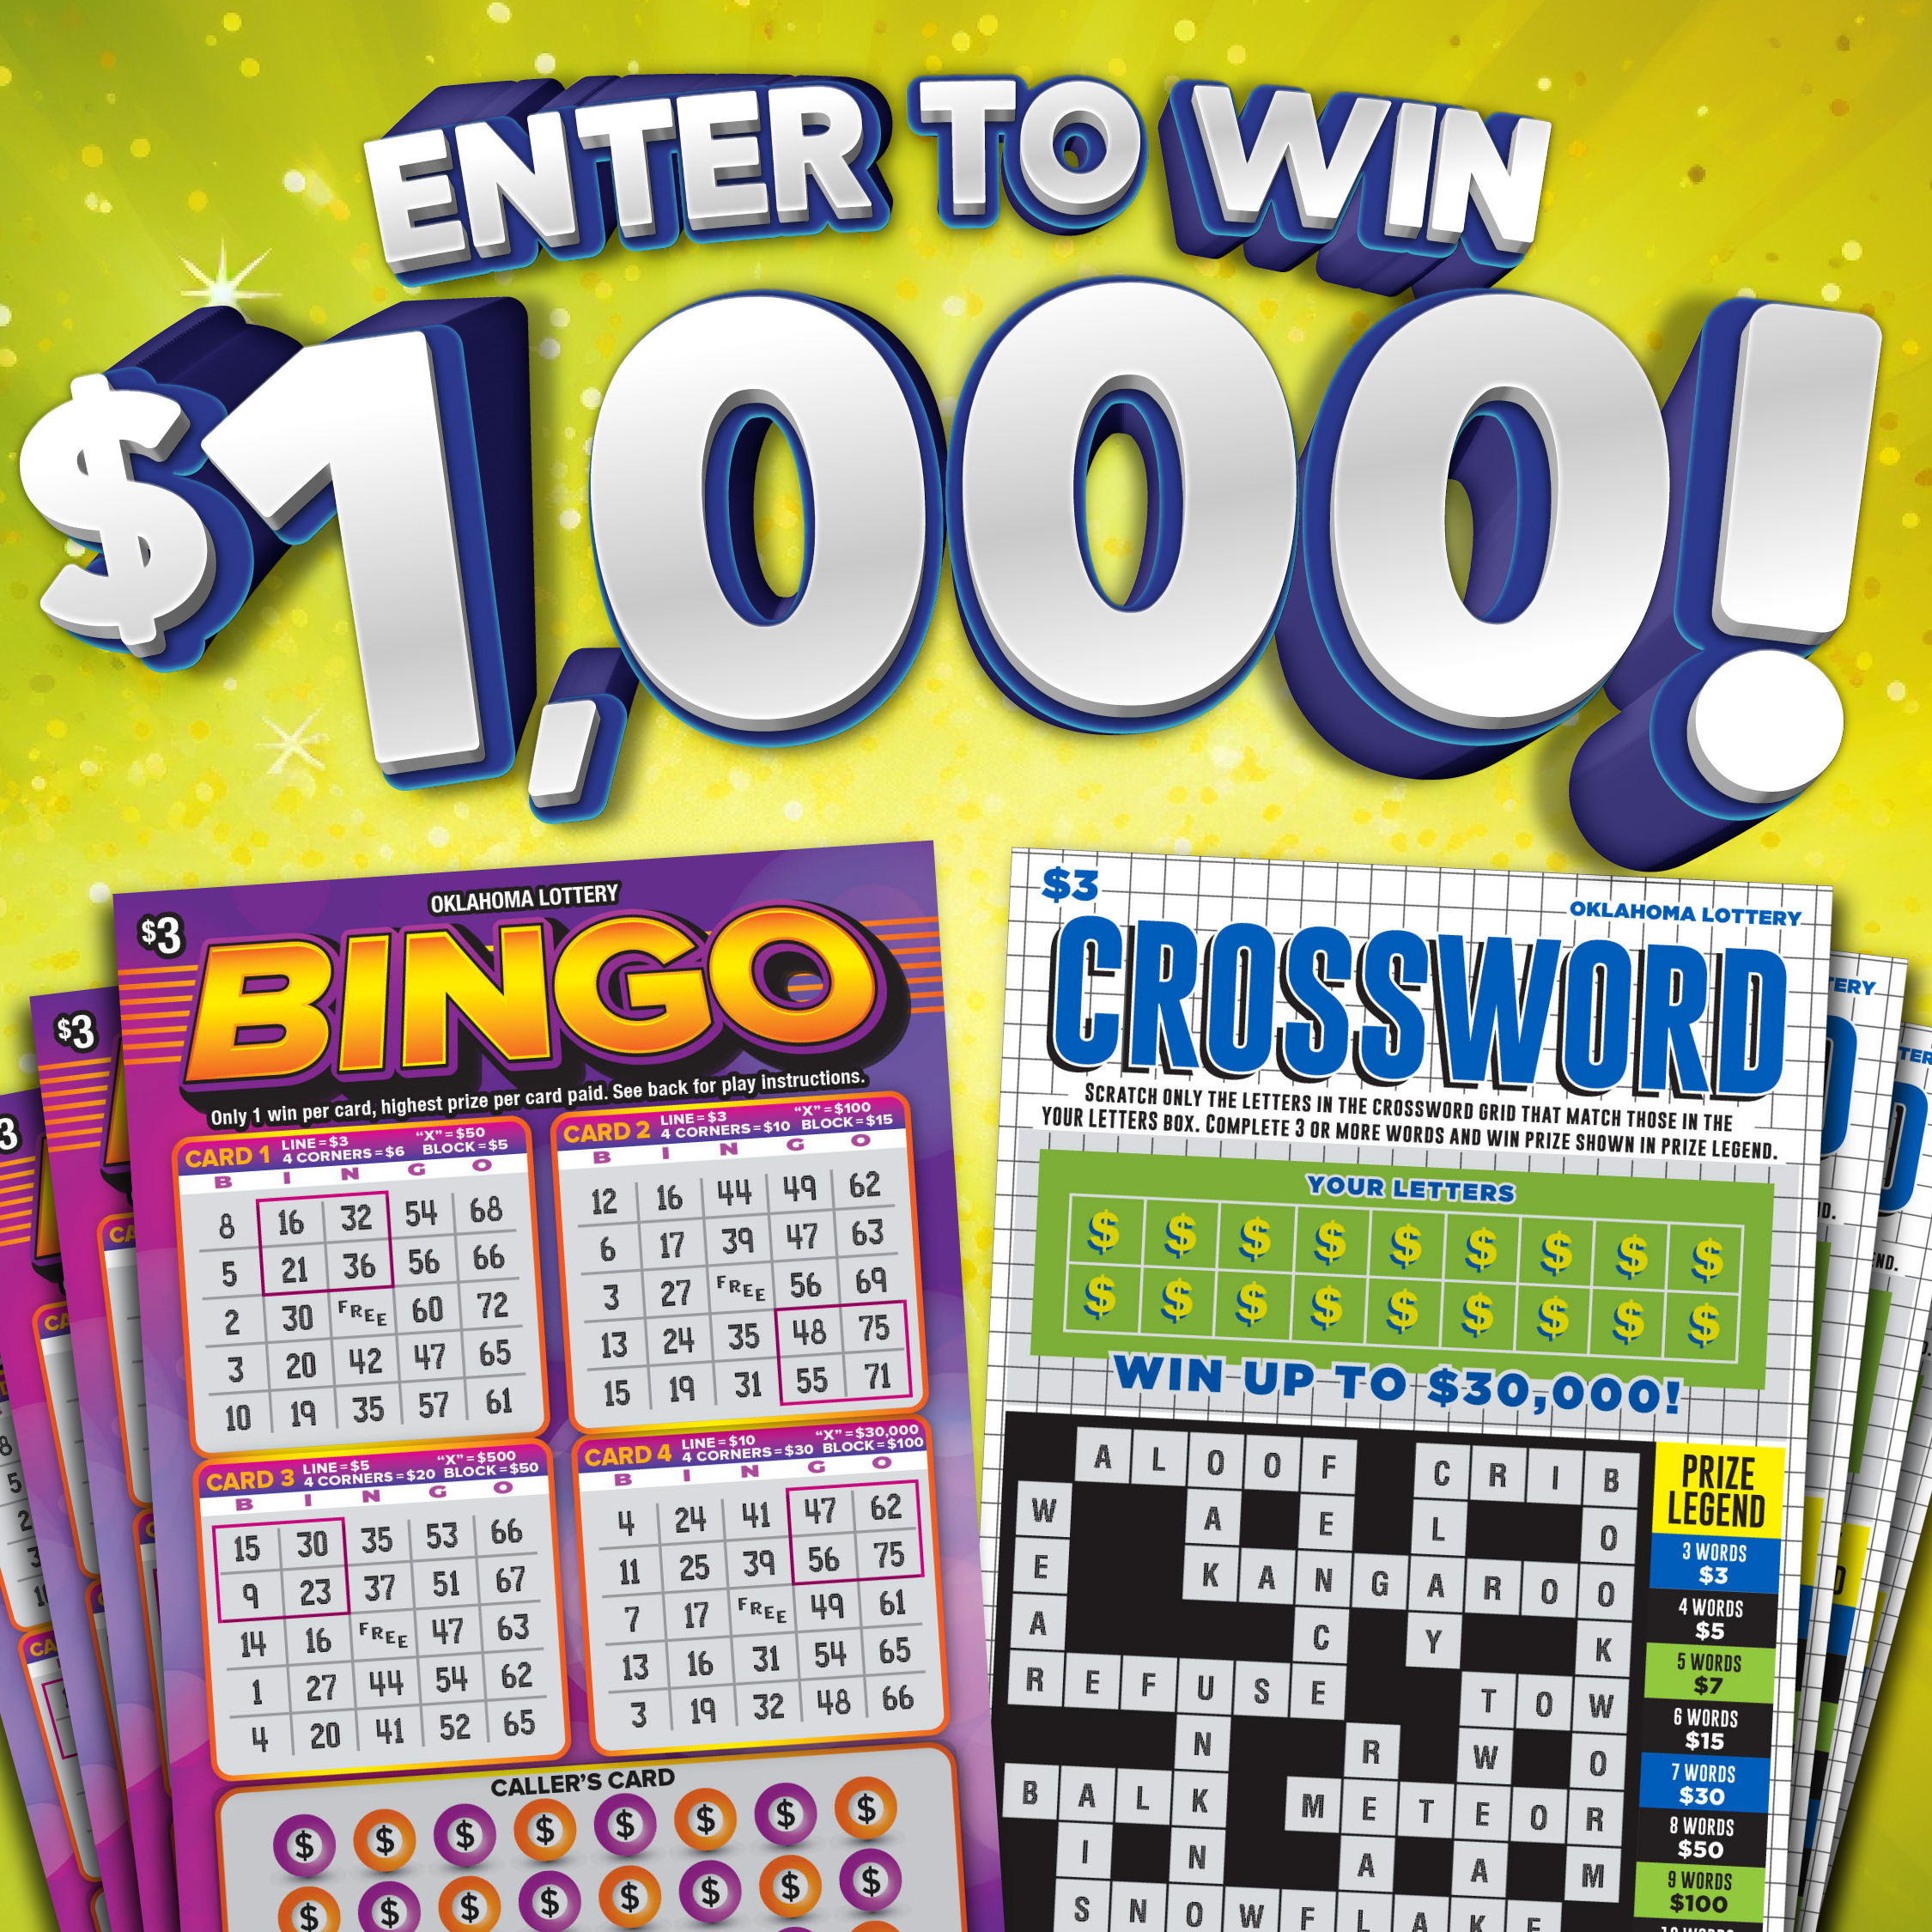 Bingo and Crossword Giveaway! Image